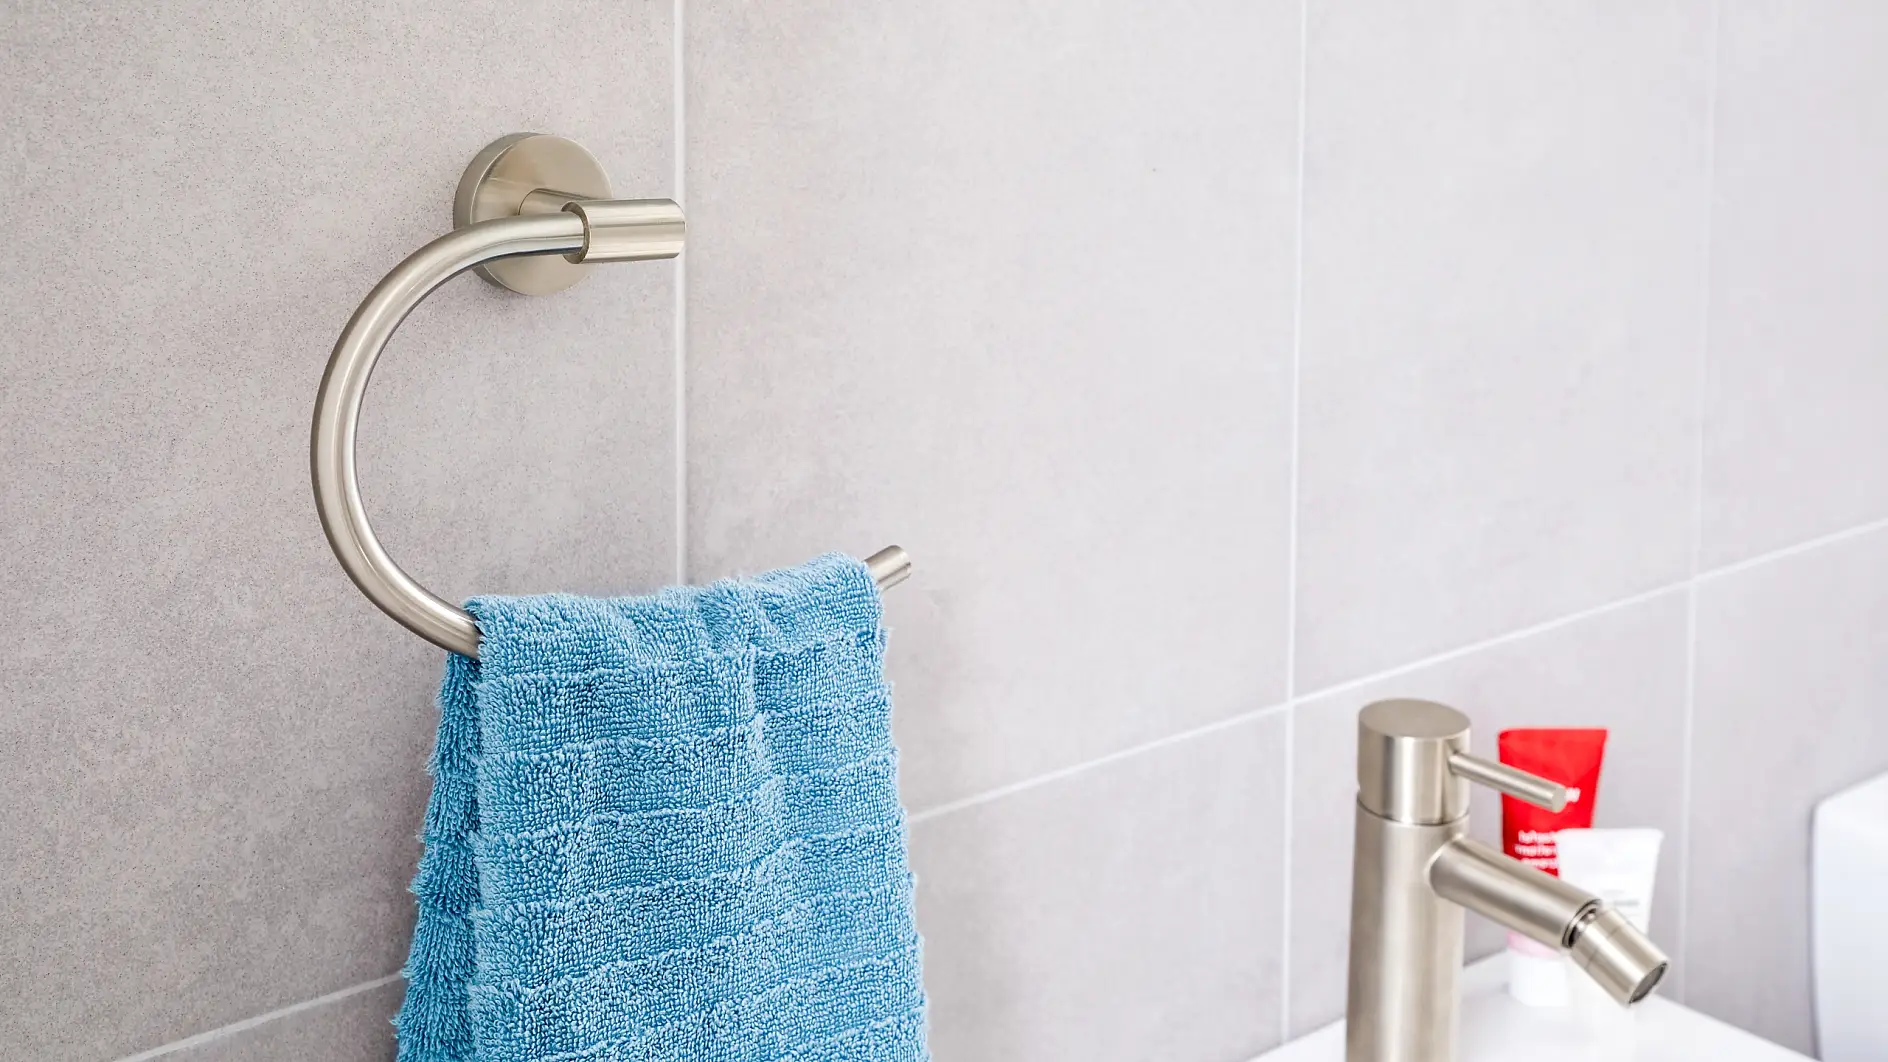 Su noble diseño cumple con eficacia la función de mantener tus toallas de mano cerca del lavabo.